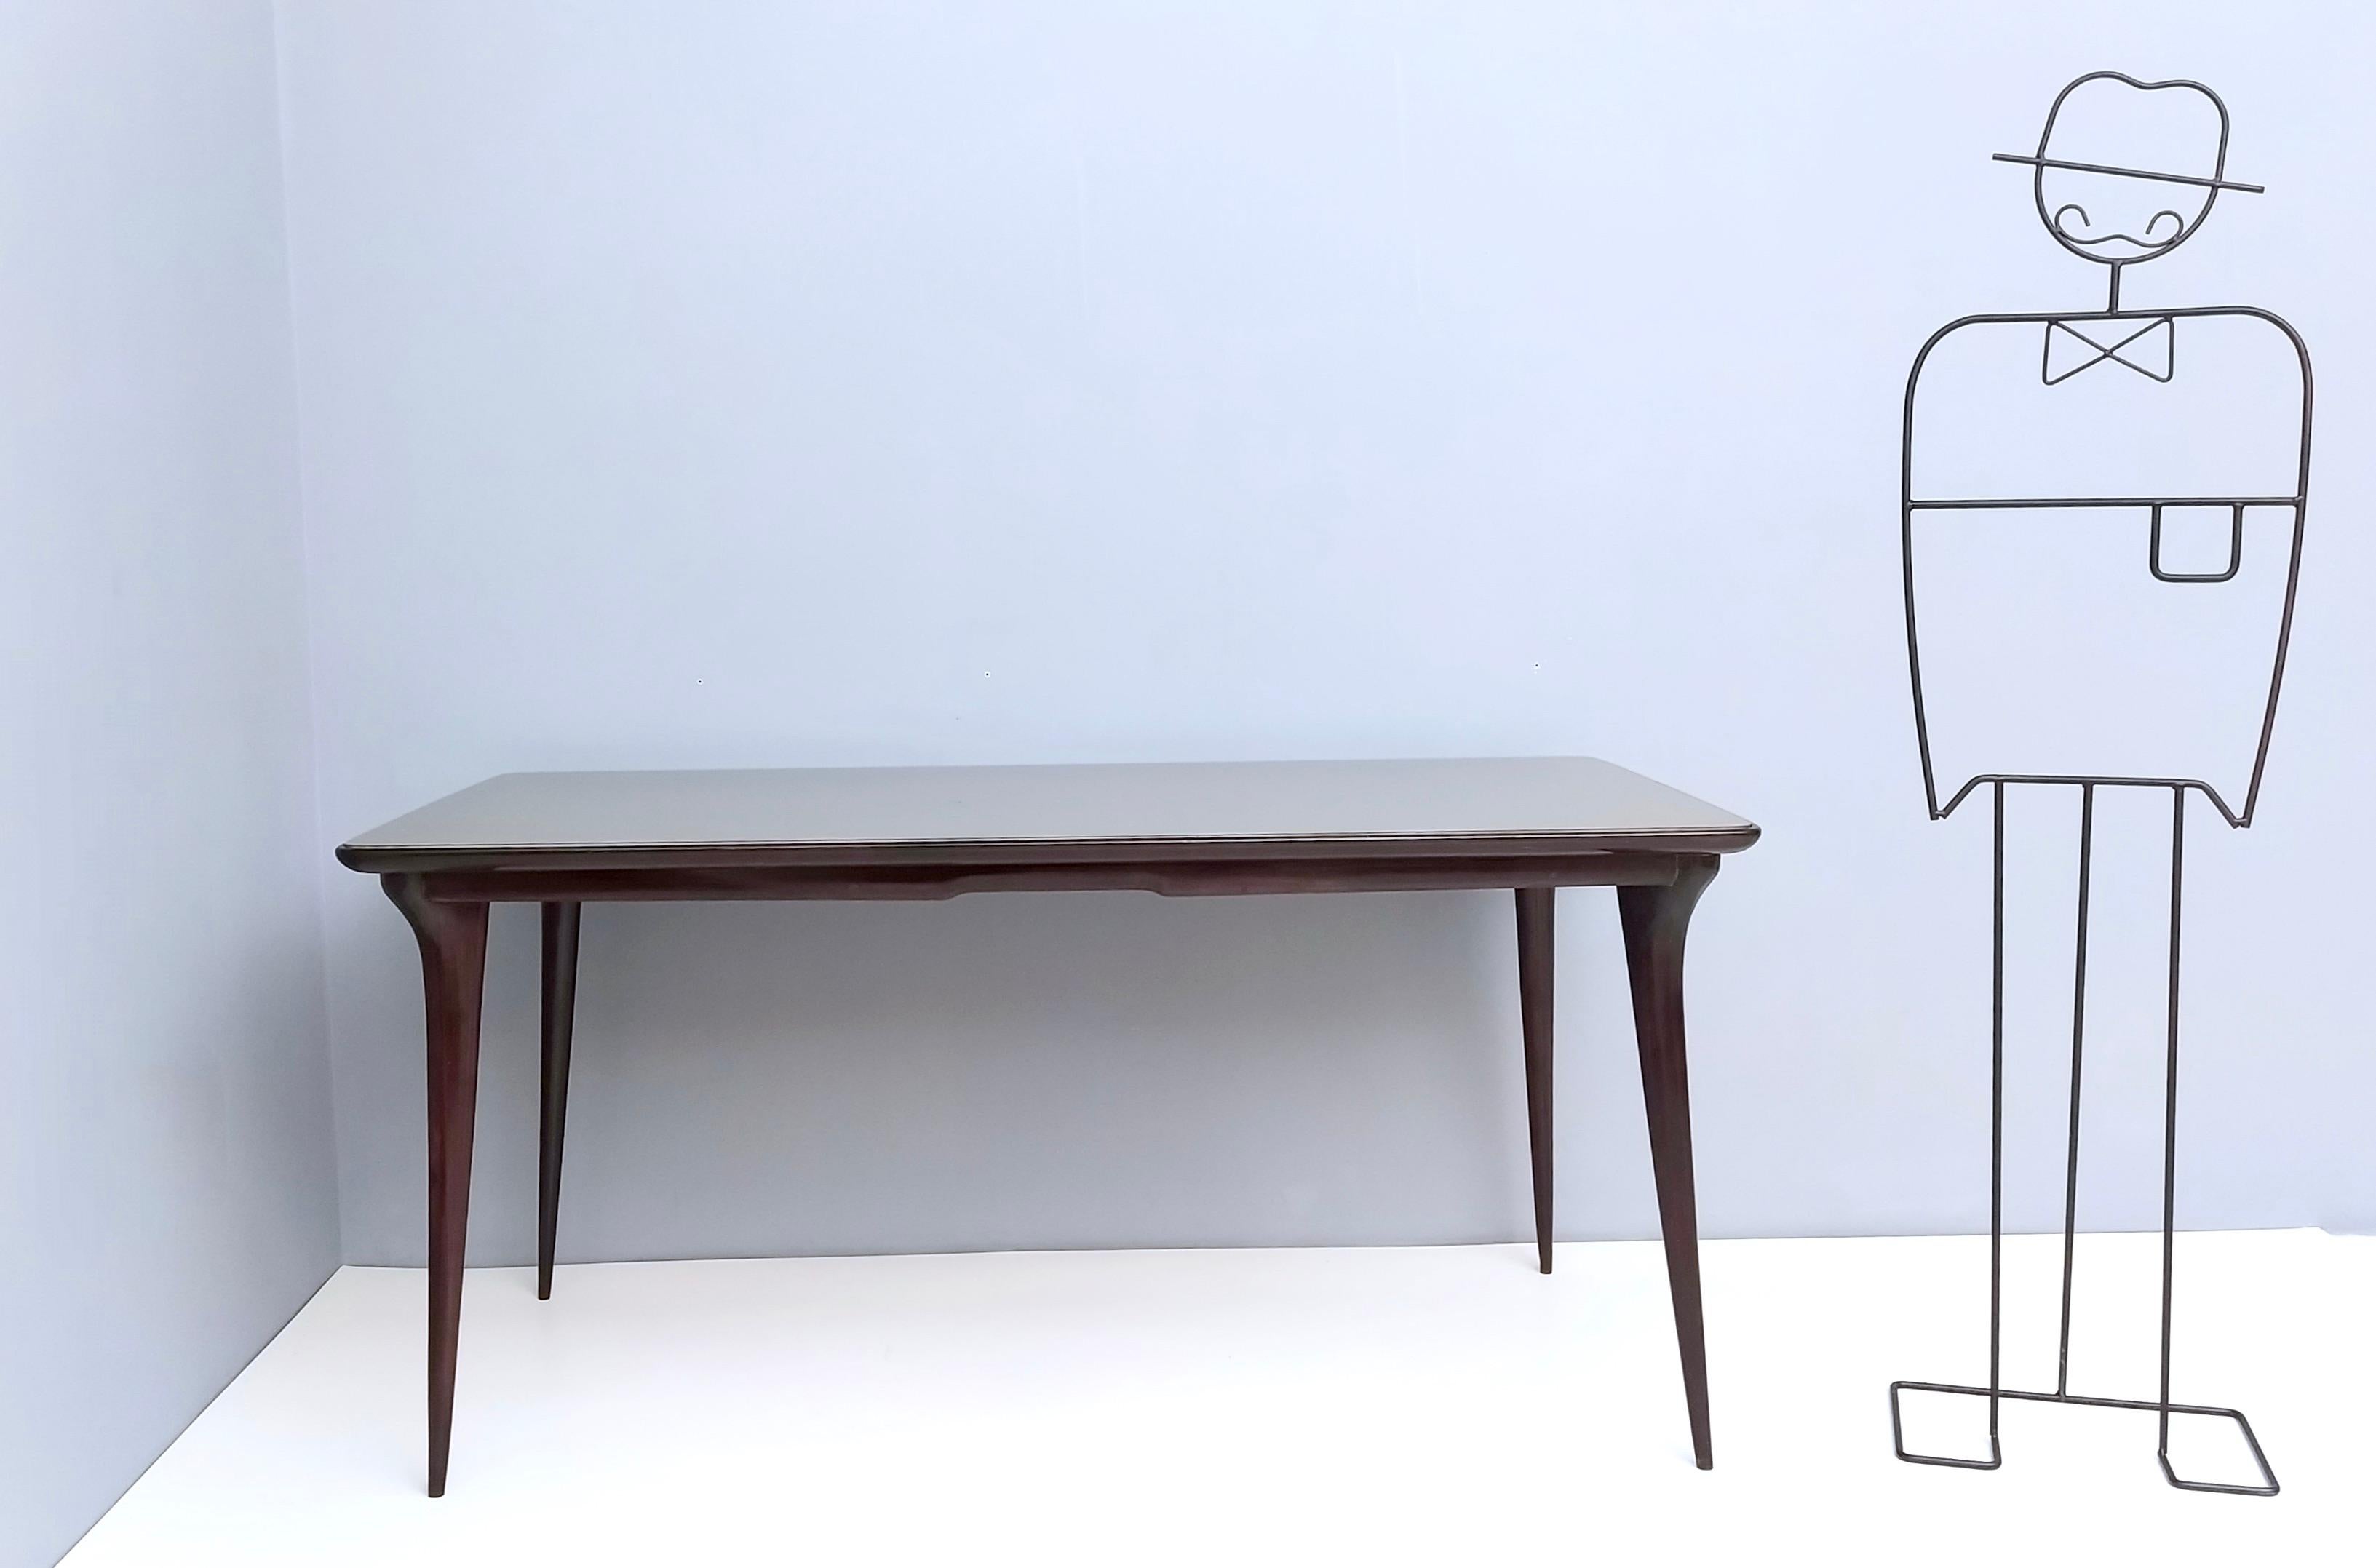 Hergestellt in Italien, 1950er Jahre.
Dieser Tisch ist aus ebonisierter Buche gefertigt und hat eine taupefarbene Glasplatte mit Rückenbemalung. 
Da es sich um einen Vintage-Artikel handelt, kann er leichte Gebrauchsspuren aufweisen, aber er